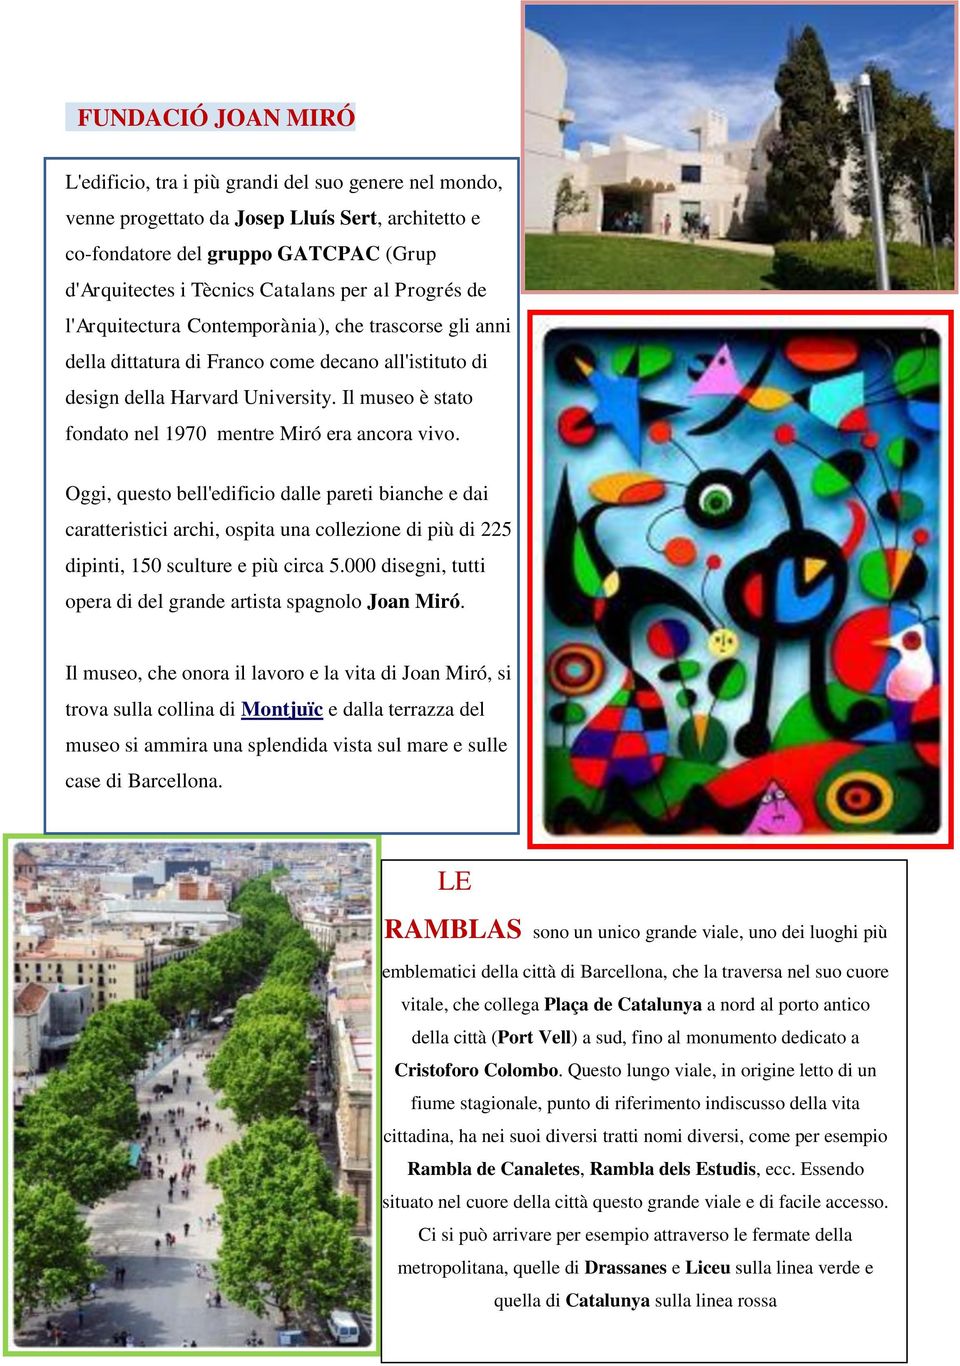 Il museo è stato fondato nel 1970 mentre Miró era ancora vivo.